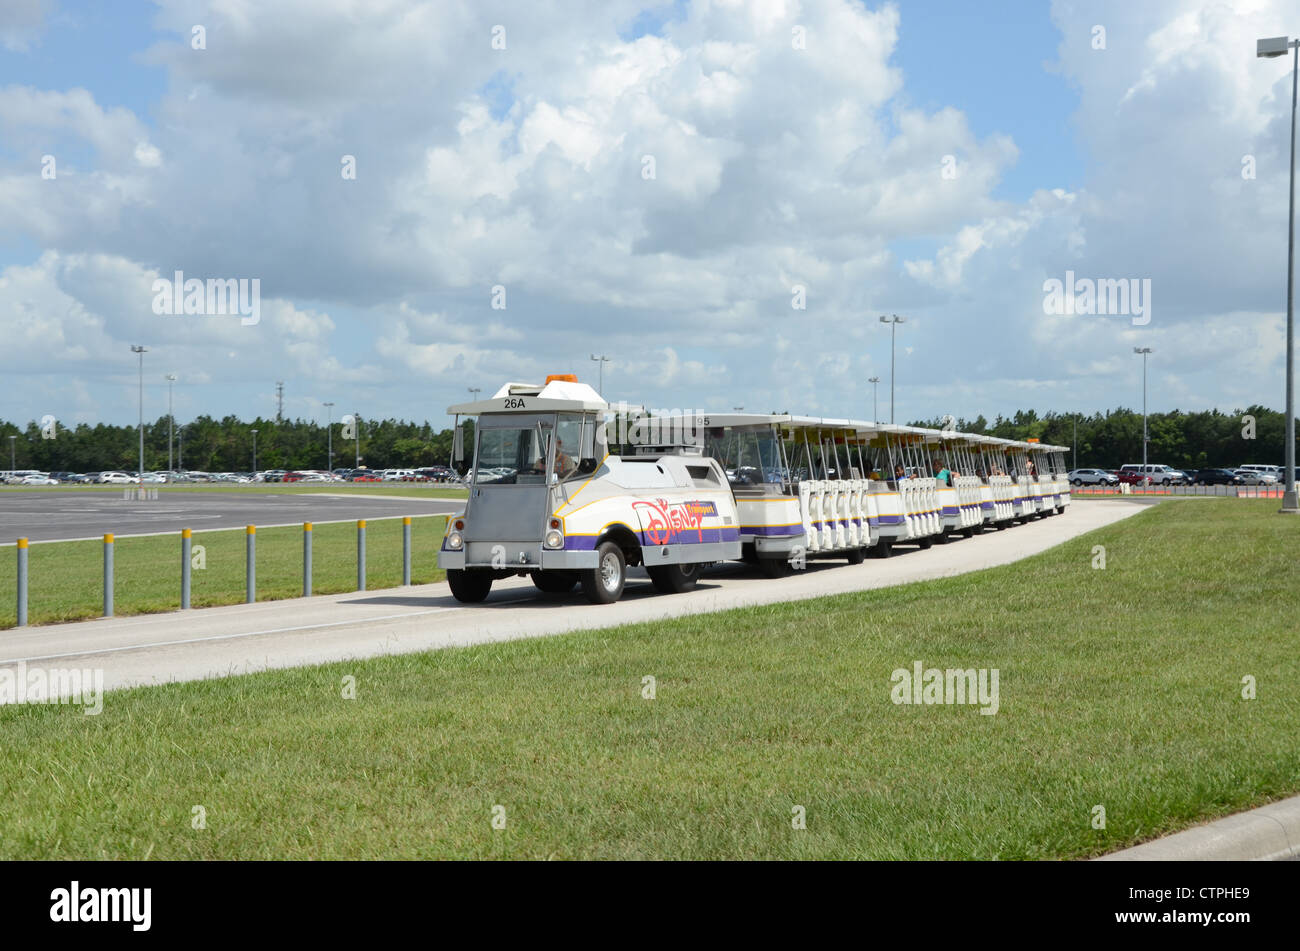 Disney Tram la manutenzione del parco auto zone a Disney Florida. La fermata del tram raccoglie e restituisce il cliente da e verso le aree di parcheggio Foto Stock